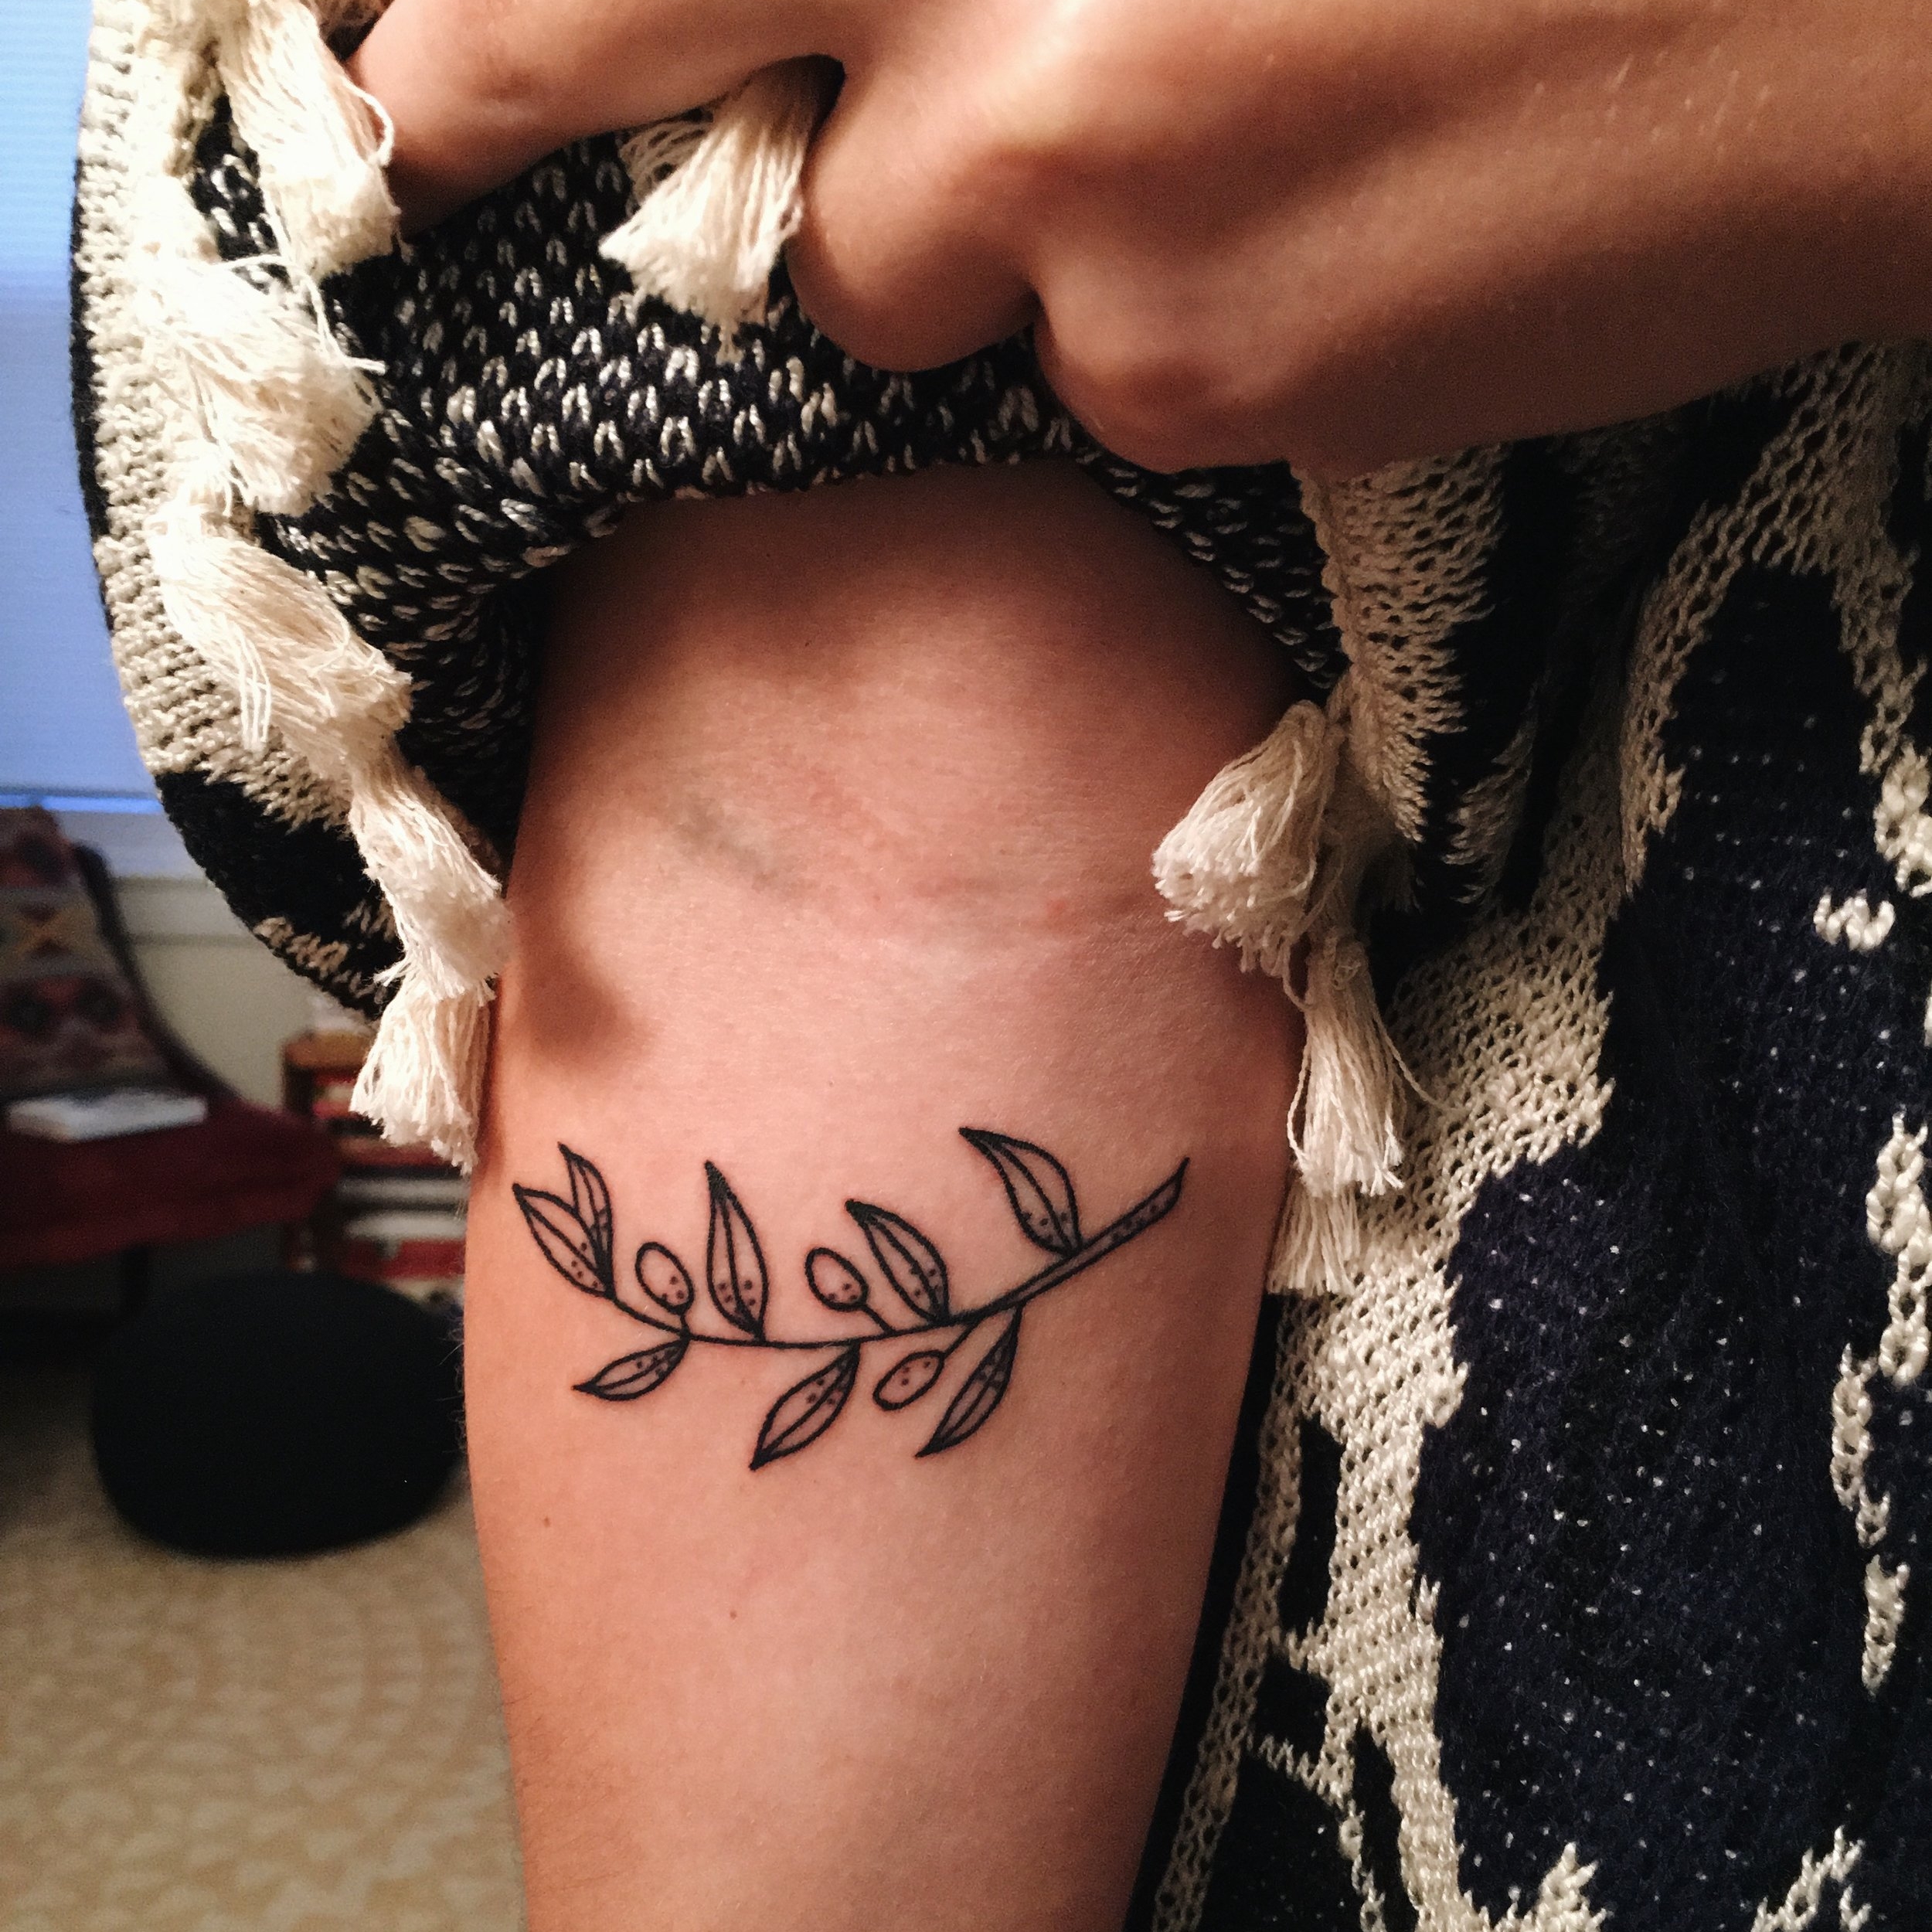 Why I Got an Olive Branch Tattoo — rachel a. dawson